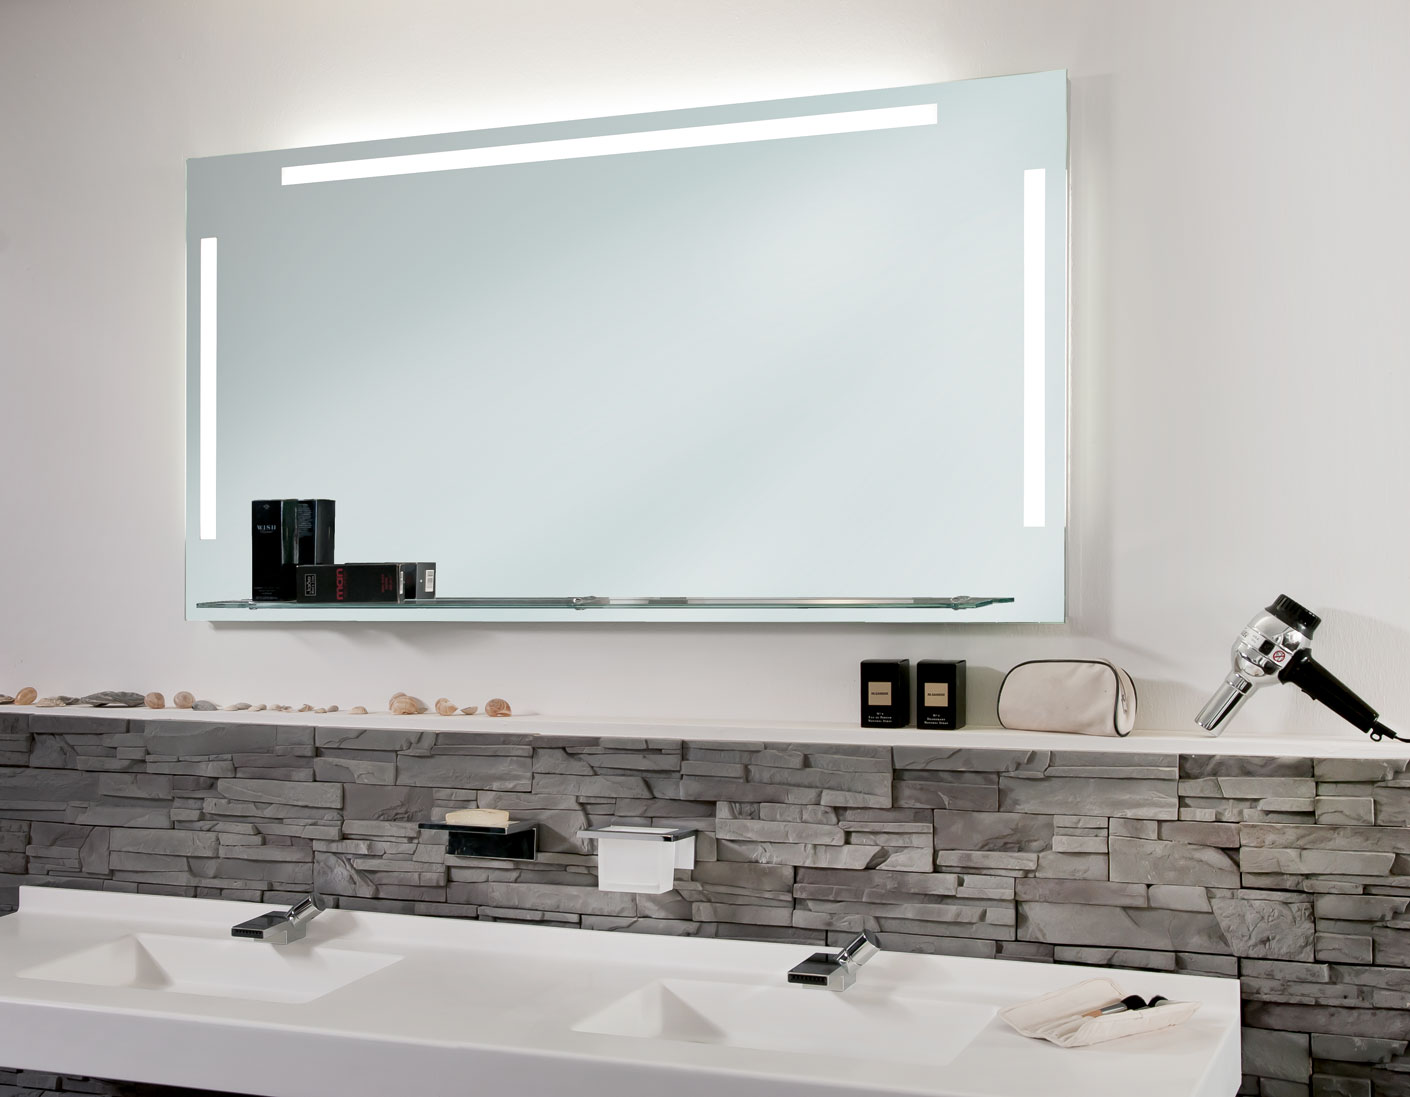 Schreiber Design LED Badspiegel Badezimmerspiegel mit Beleuchtung Easy Lichtfarbe 4000K Neutralweiß 45 cm Breit x 60 cm Hoch Licht Links+rechts